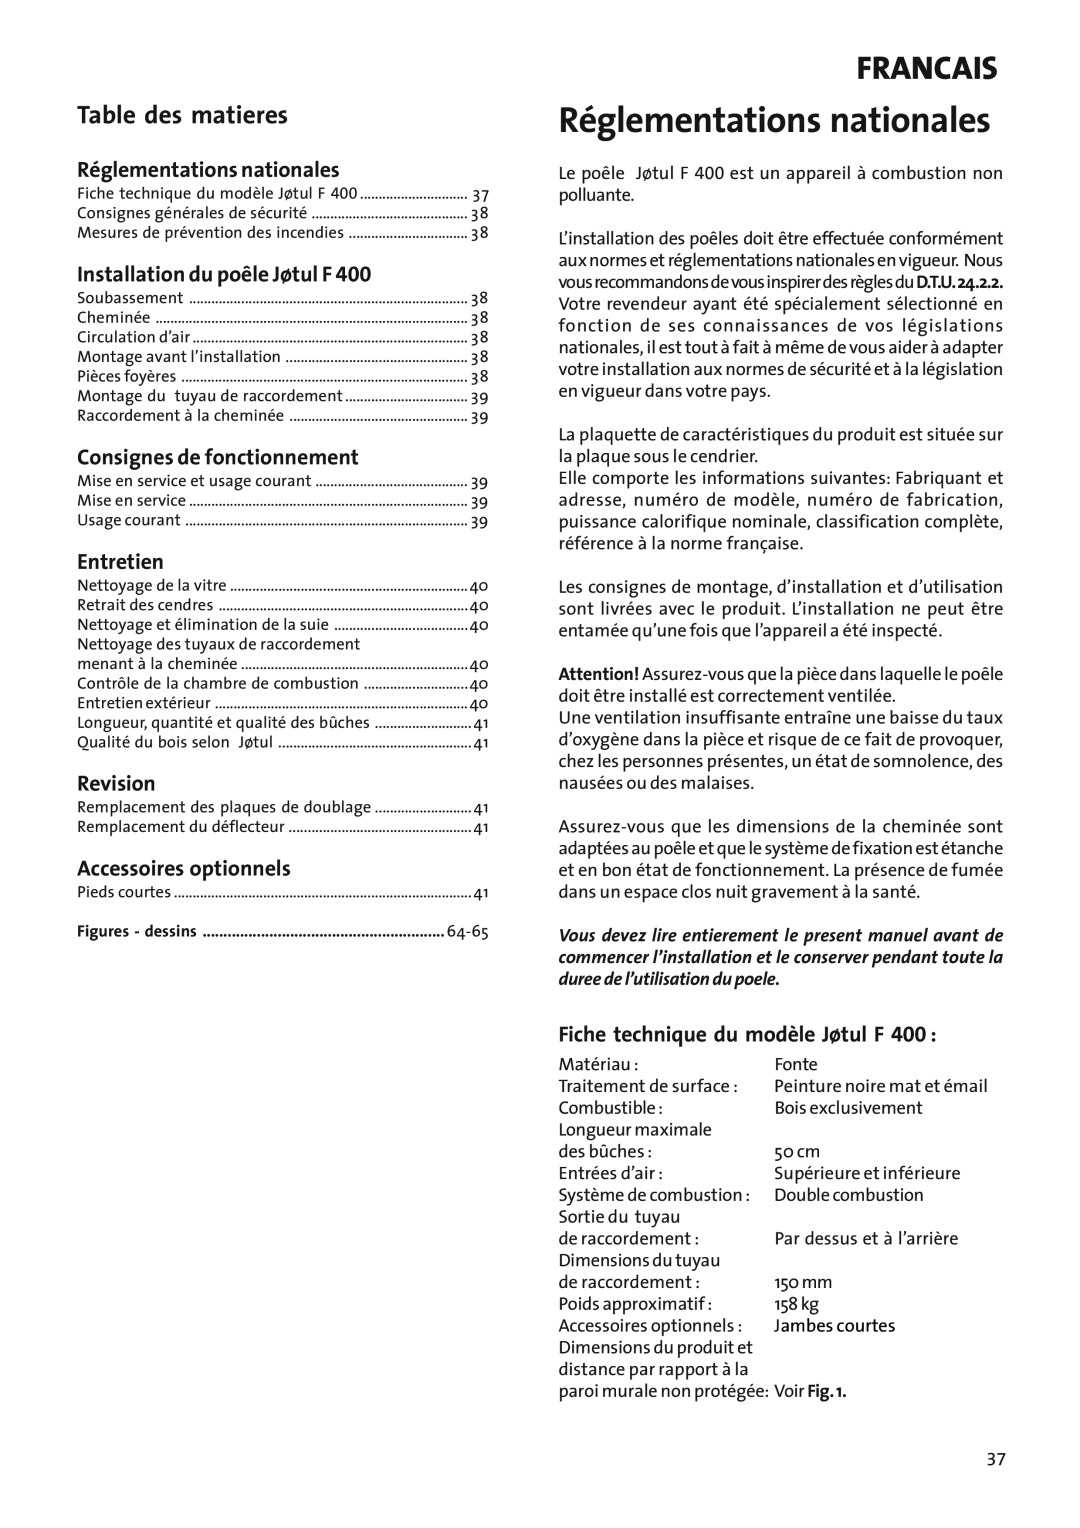 Jotul Woodstove F 400 Réglementations nationales, Francais, Table des matieres, Installation du poêle Jøtul F, Entretien 